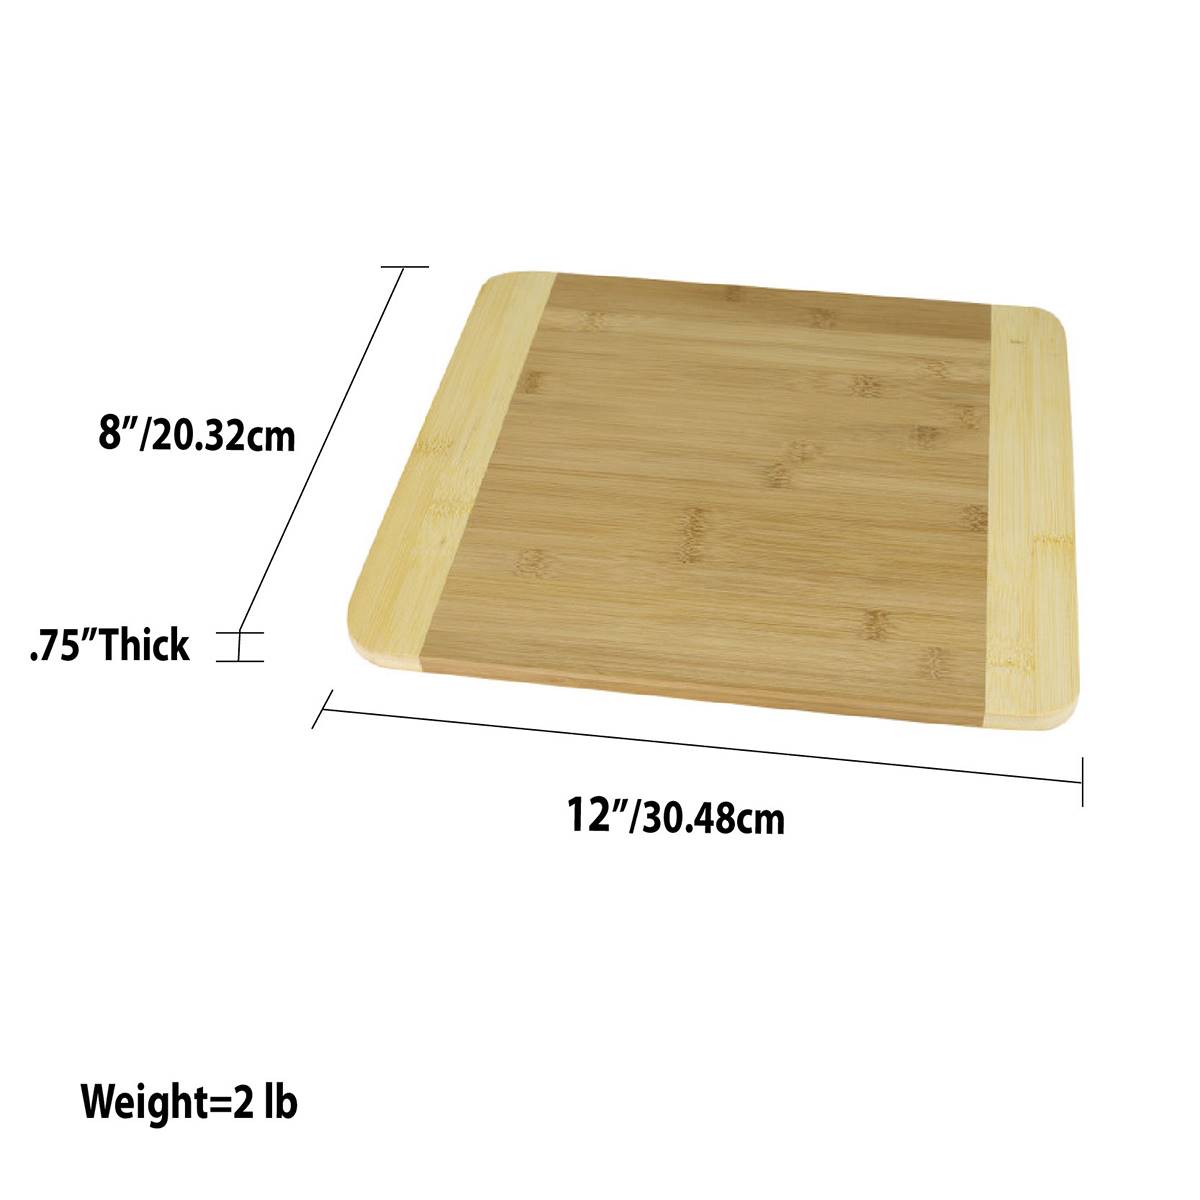 Home Basics Bamboo Cutting Board